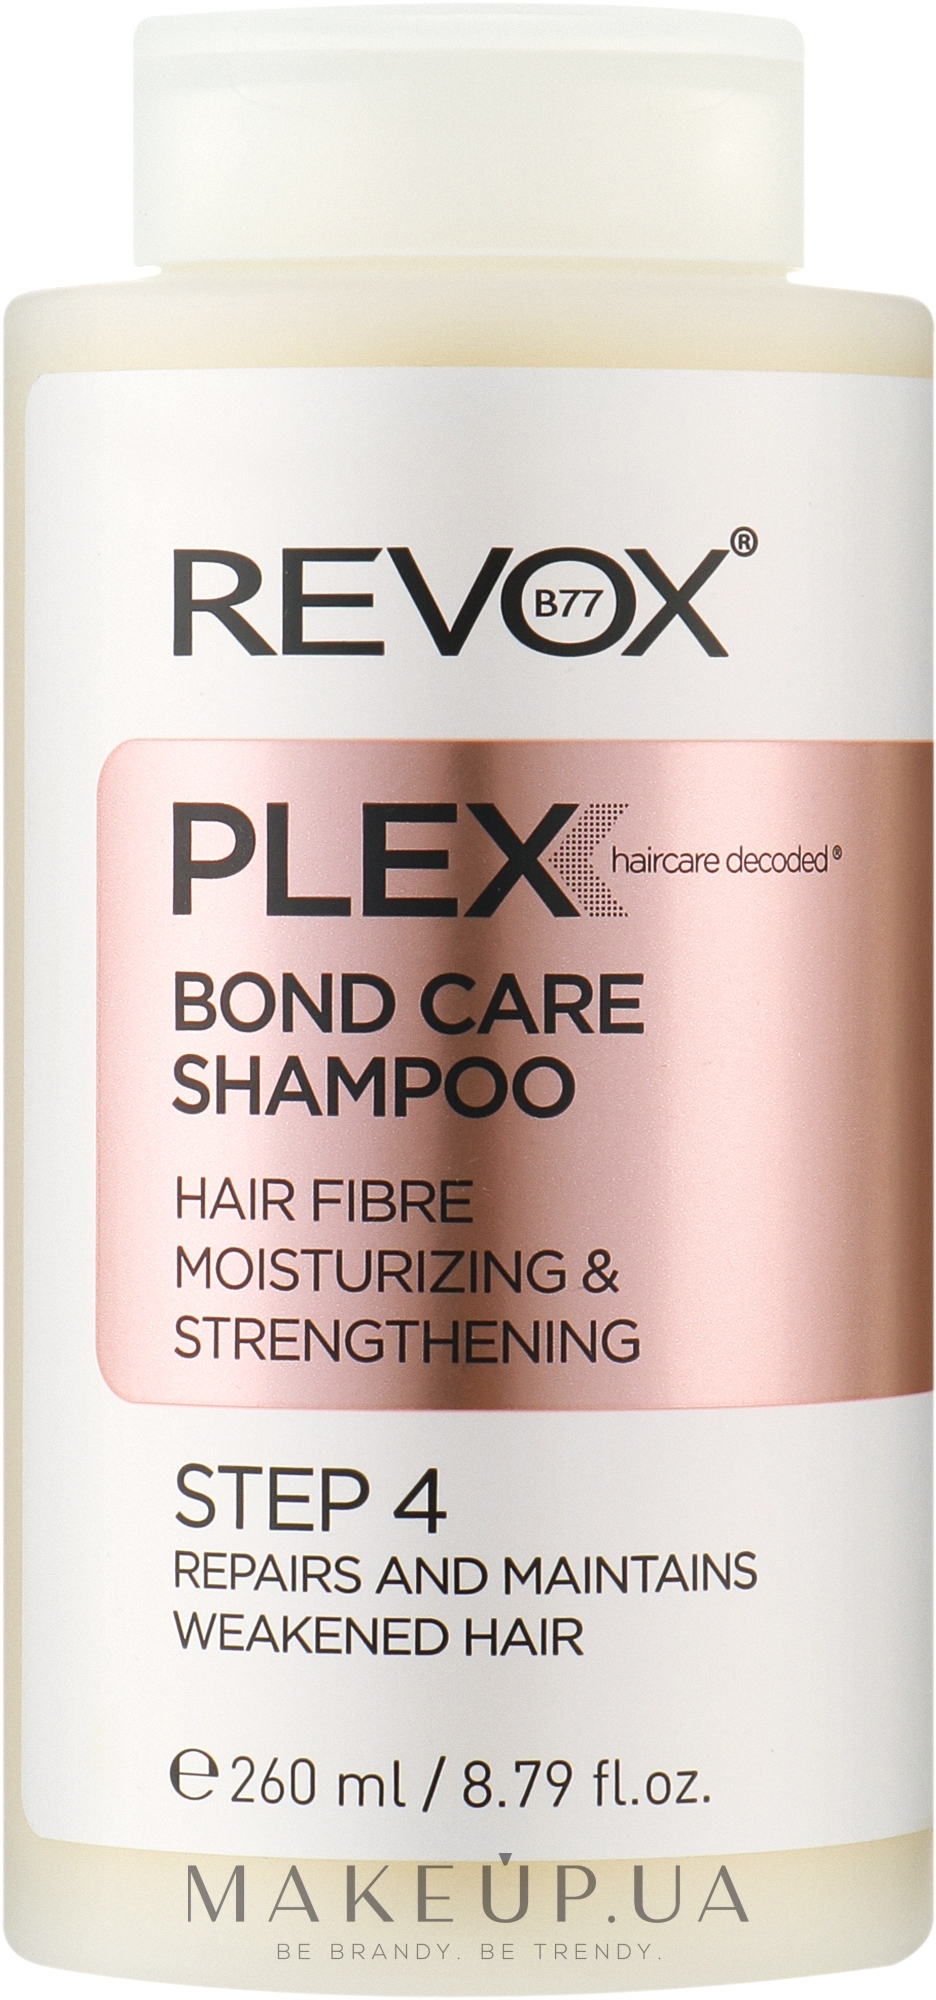 Шампунь для увлажнения и укрепления волос, шаг 4 - Revox B77 Plex Bond Care Shampoo STEP 4 — фото 260ml